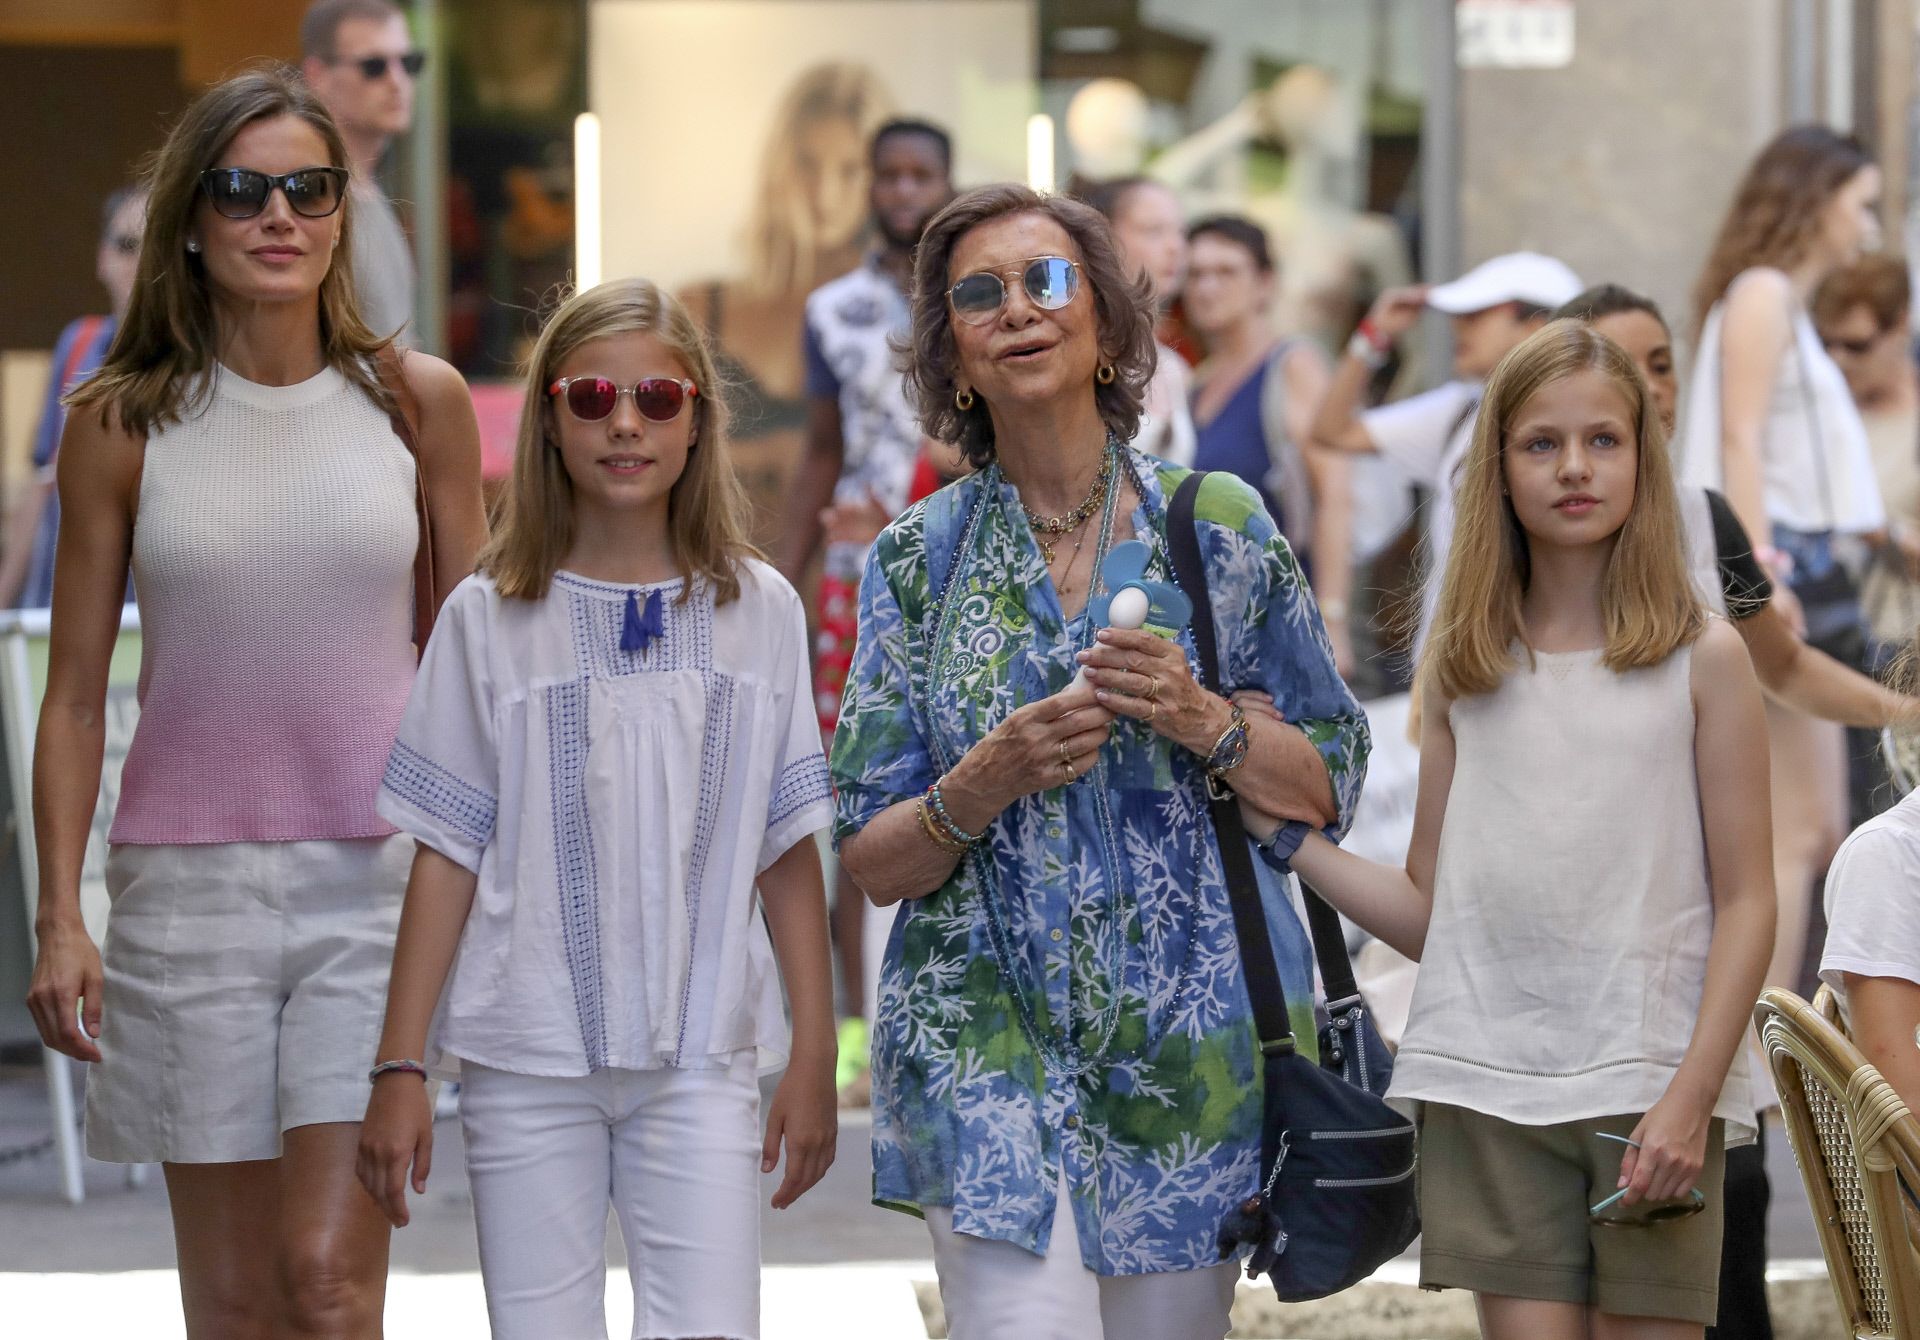 La Reina Letizia y sus hijas coinciden: las son el short estrella 2018 - looks de Letizia y sus hijas en Palma de